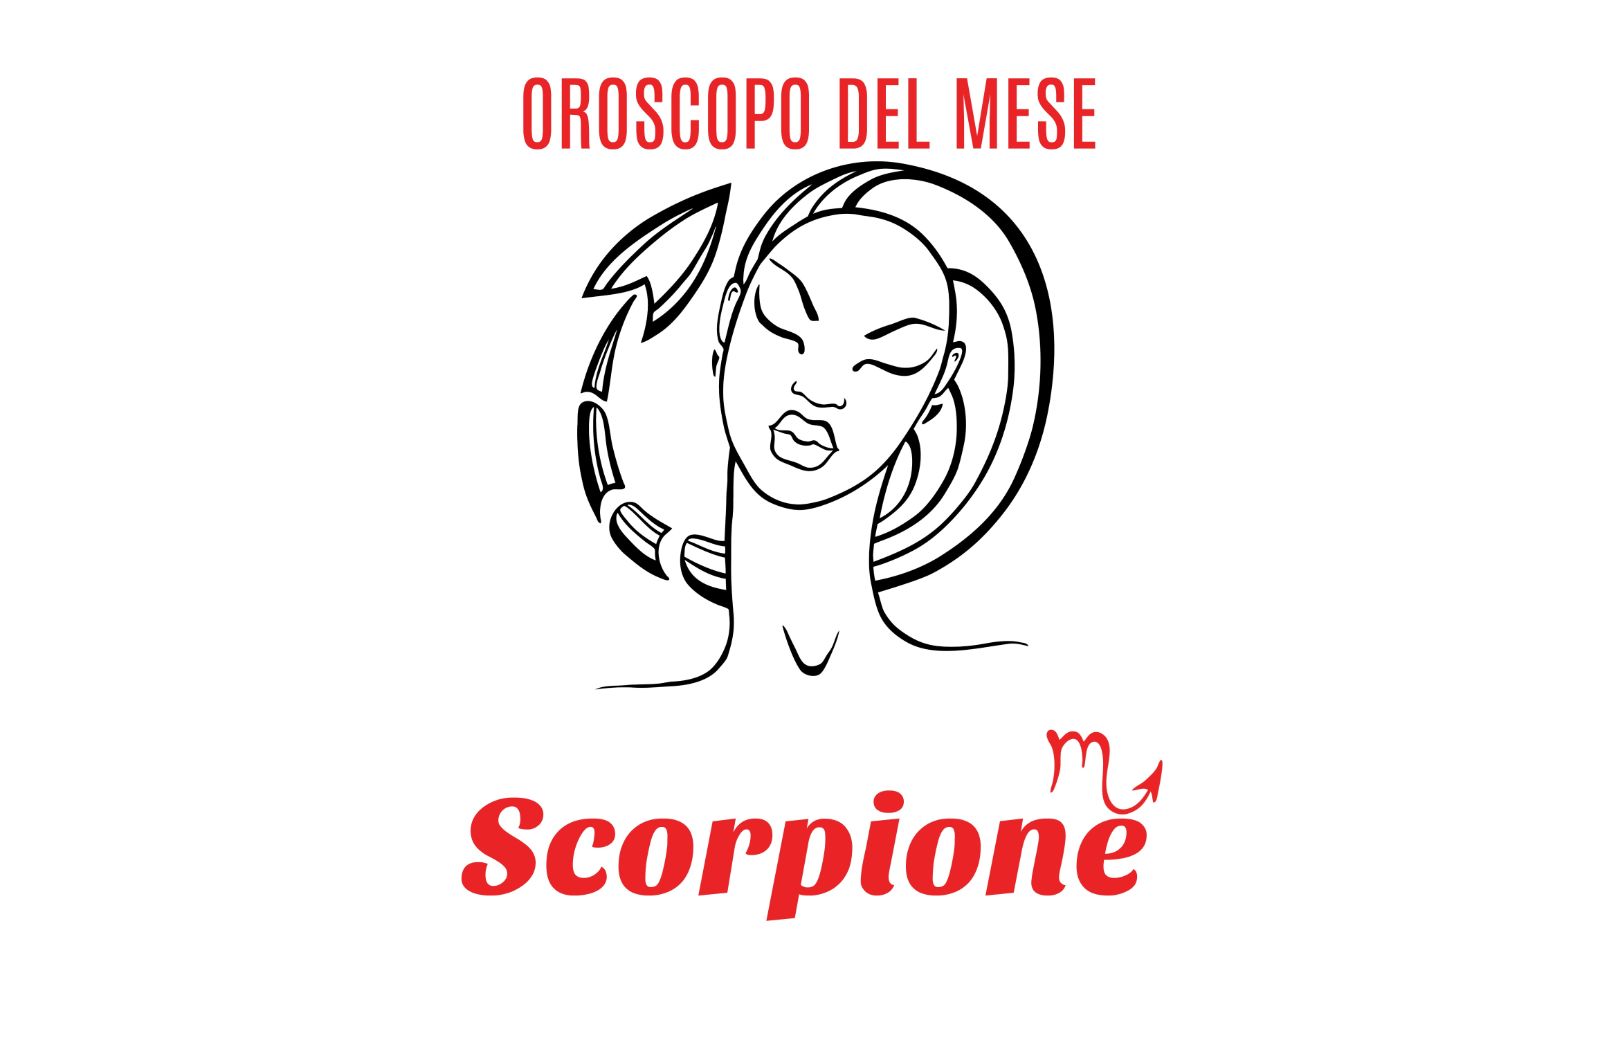 Oroscopo del mese: Scorpione - febbraio 2019